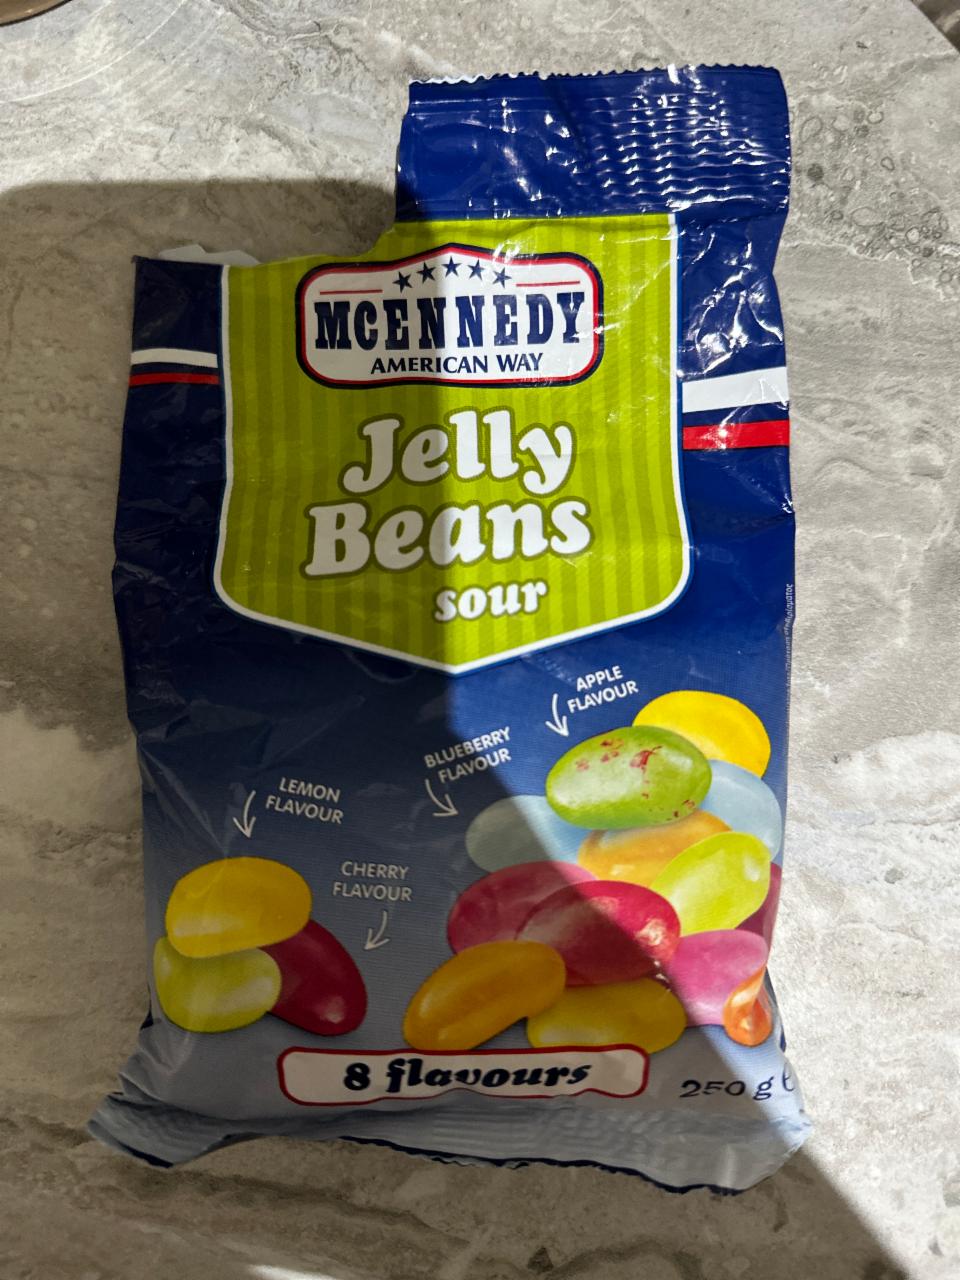 Jelly beans a - hodnoty McEnnedy kalorie, kJ nutriční sour